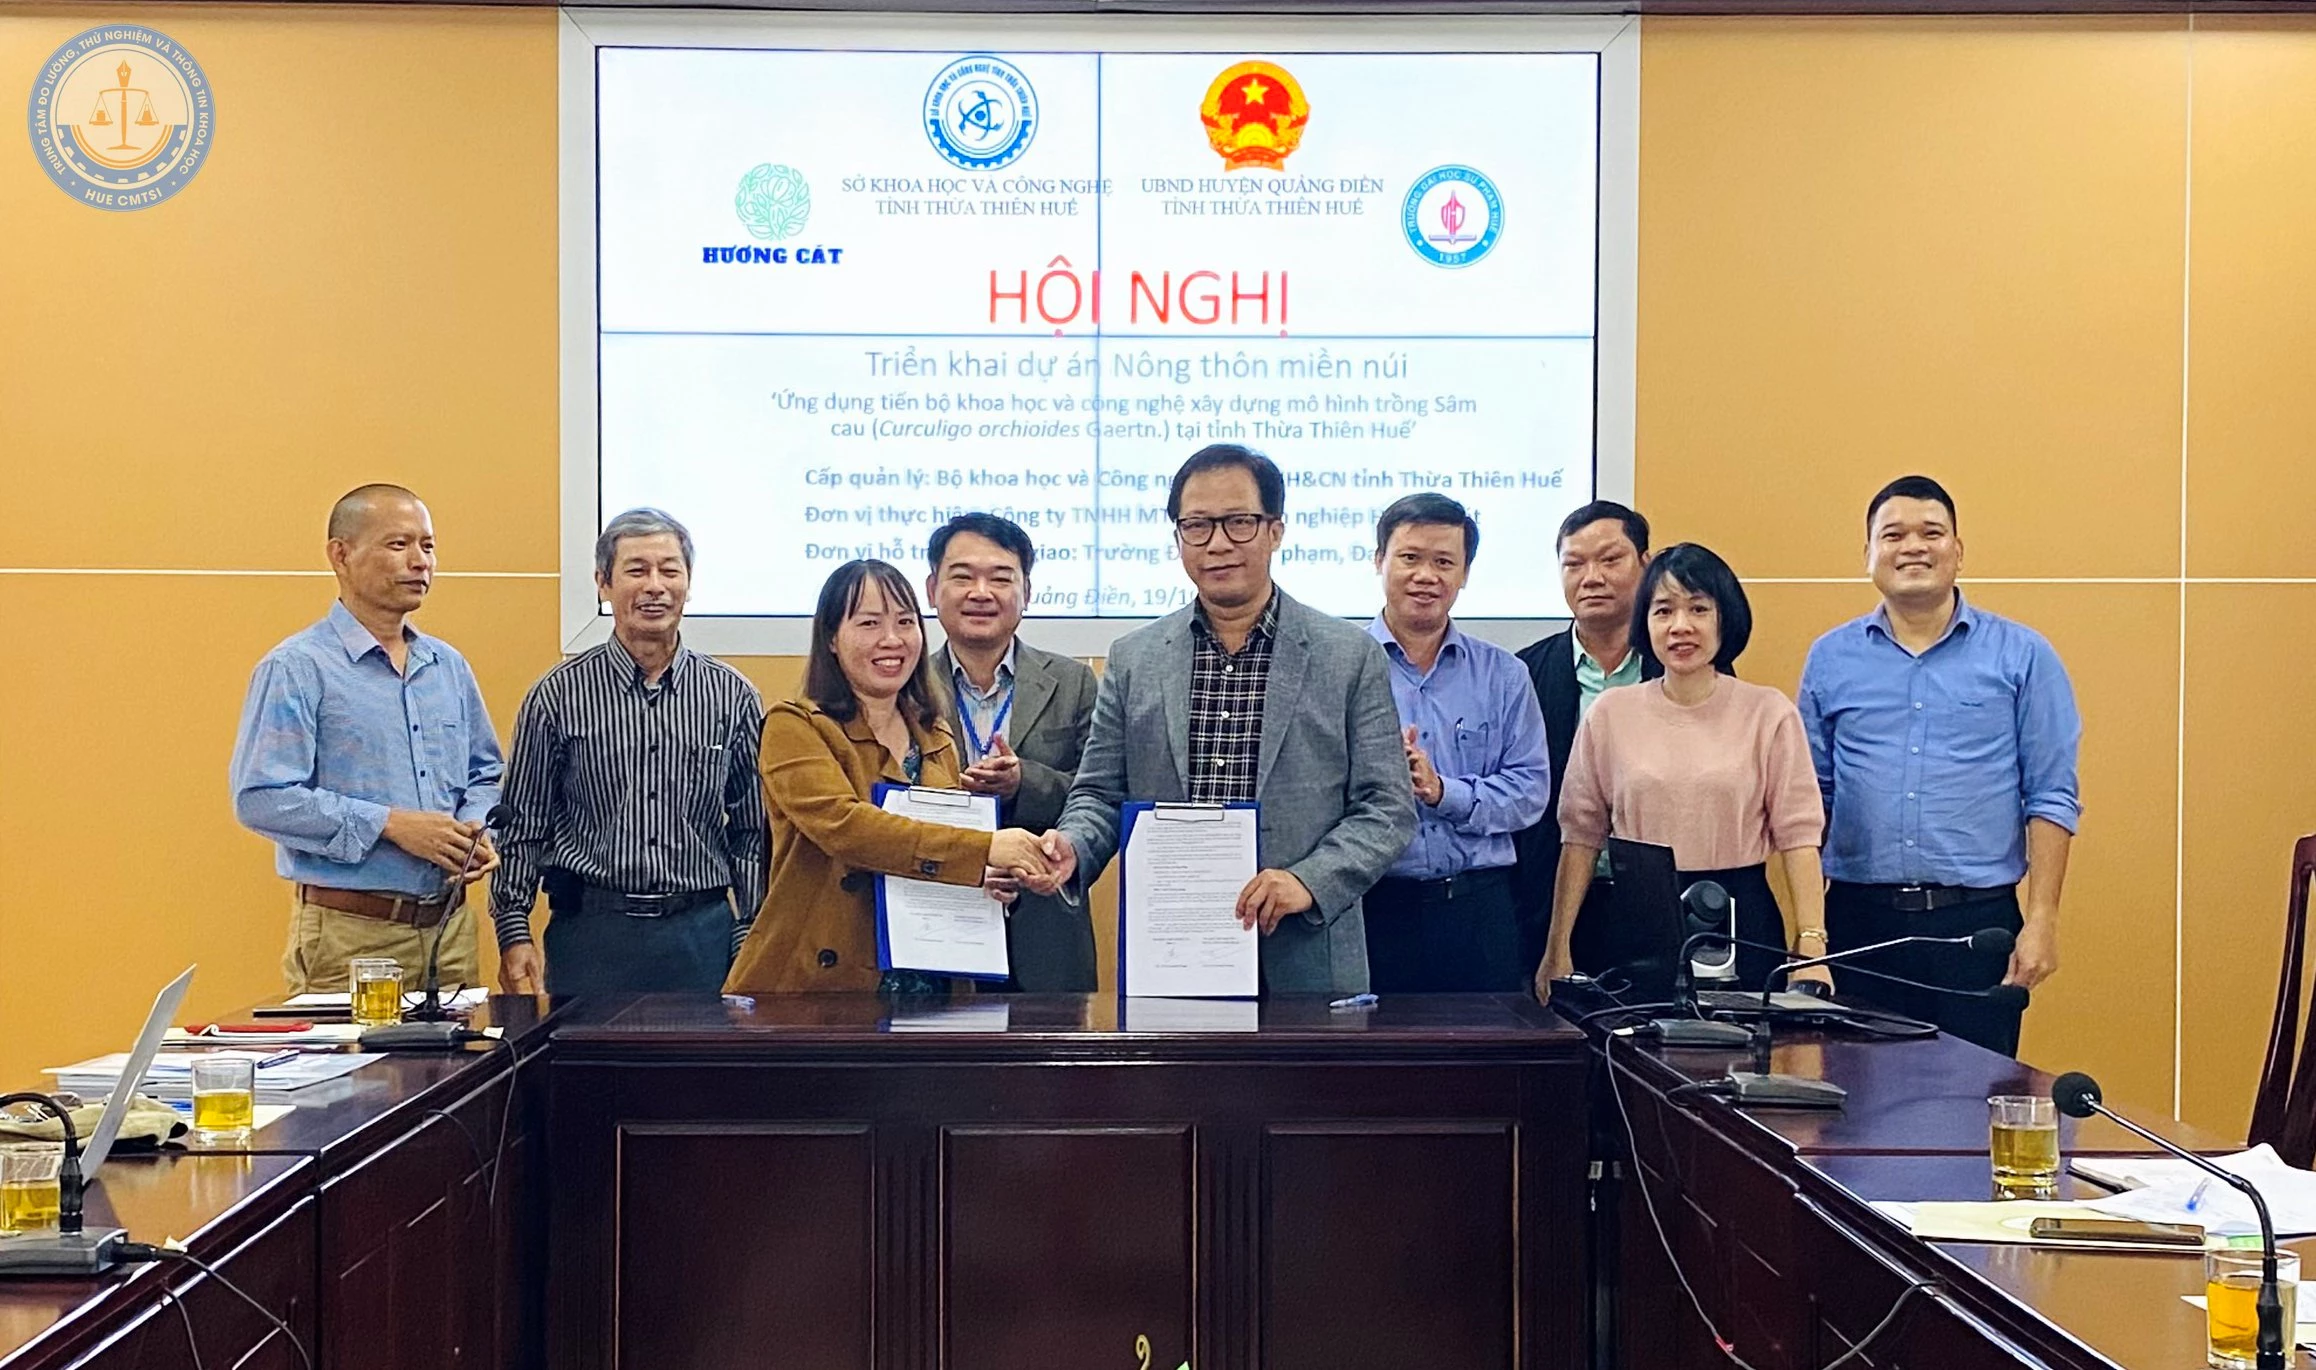 Công ty TNHH MTV Nông lâm nghiệp Hương Cát ký hợp đồng với Trường Đại học Sư phạm, Đại học Huế về chuyển giao công nghệ cho Dự án.